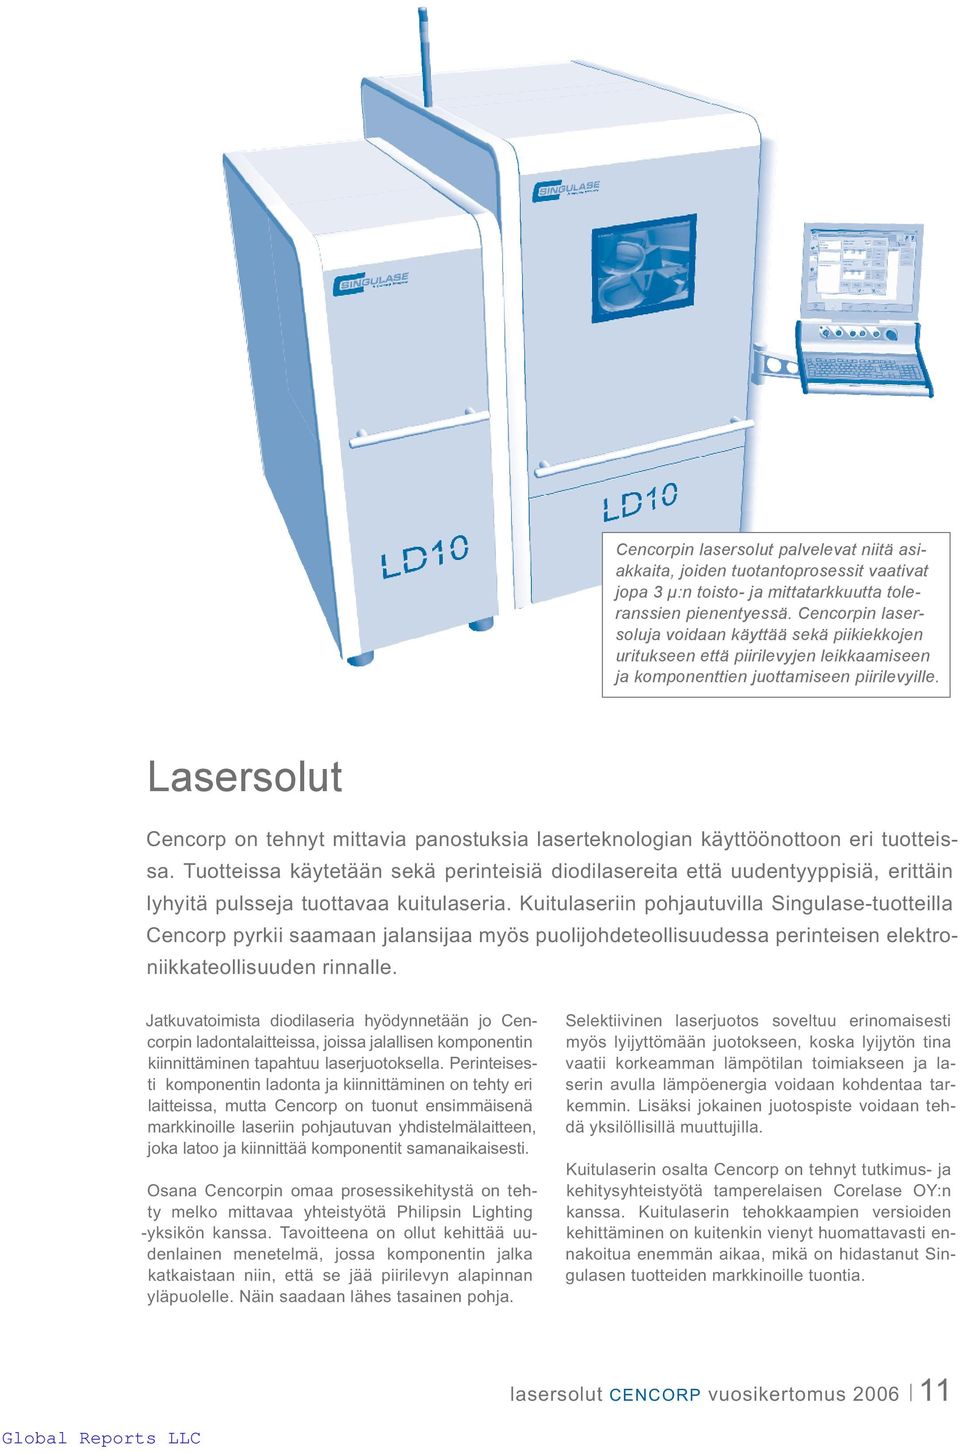 Lasersolut Cencorp on tehnyt mittavia panostuksia laserteknologian käyttöönottoon eri tuotteissa.